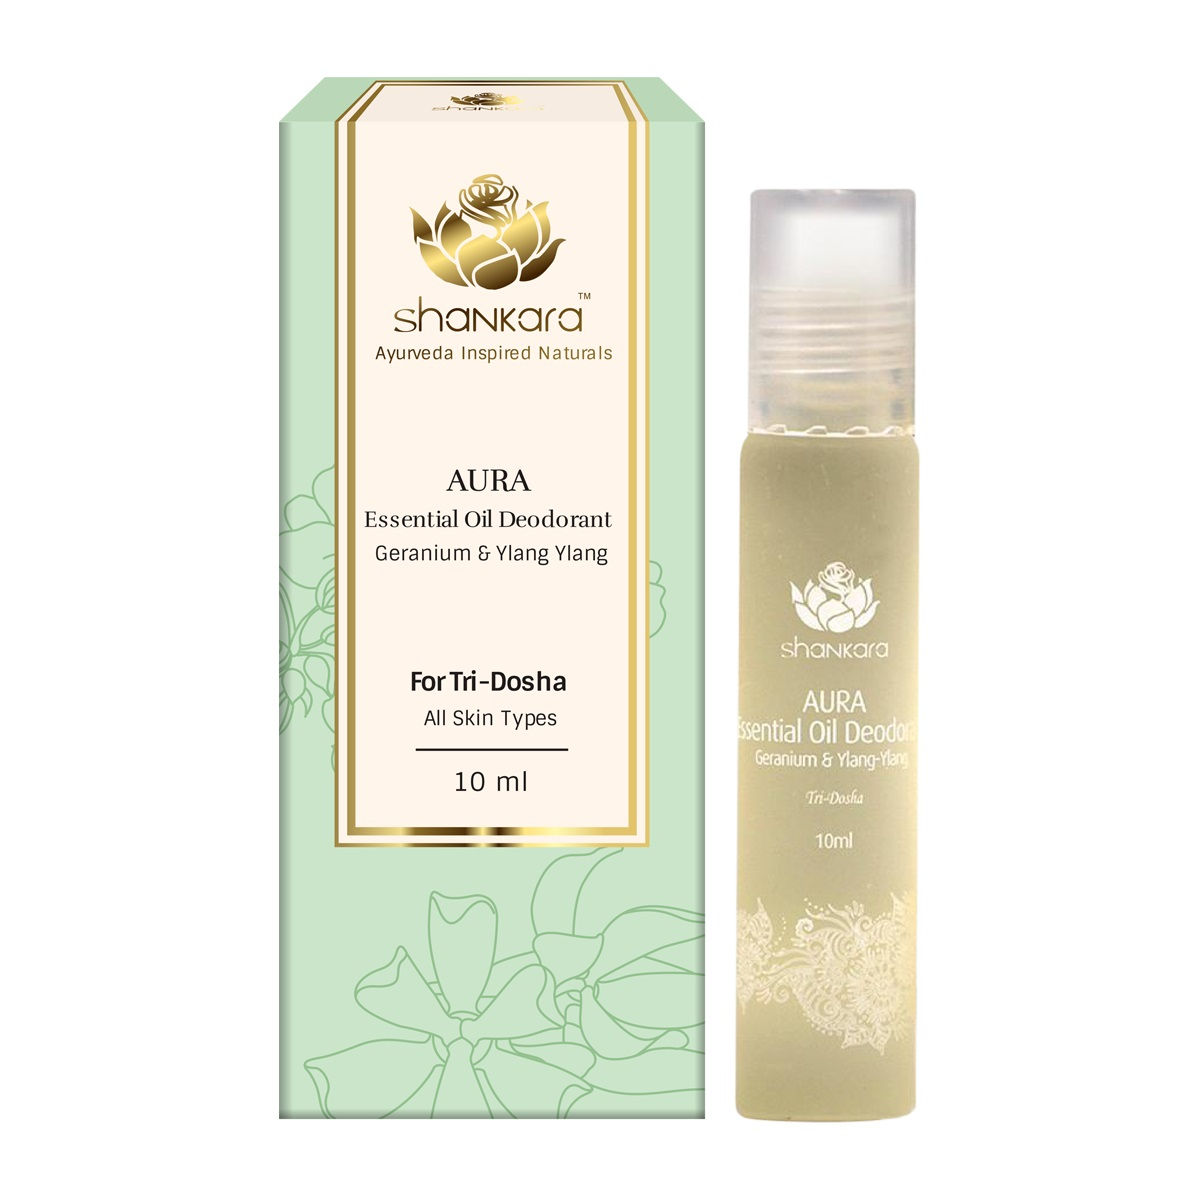 Shankara Aura Essential Oil Deodorant - Geranium & Ylang Ylang